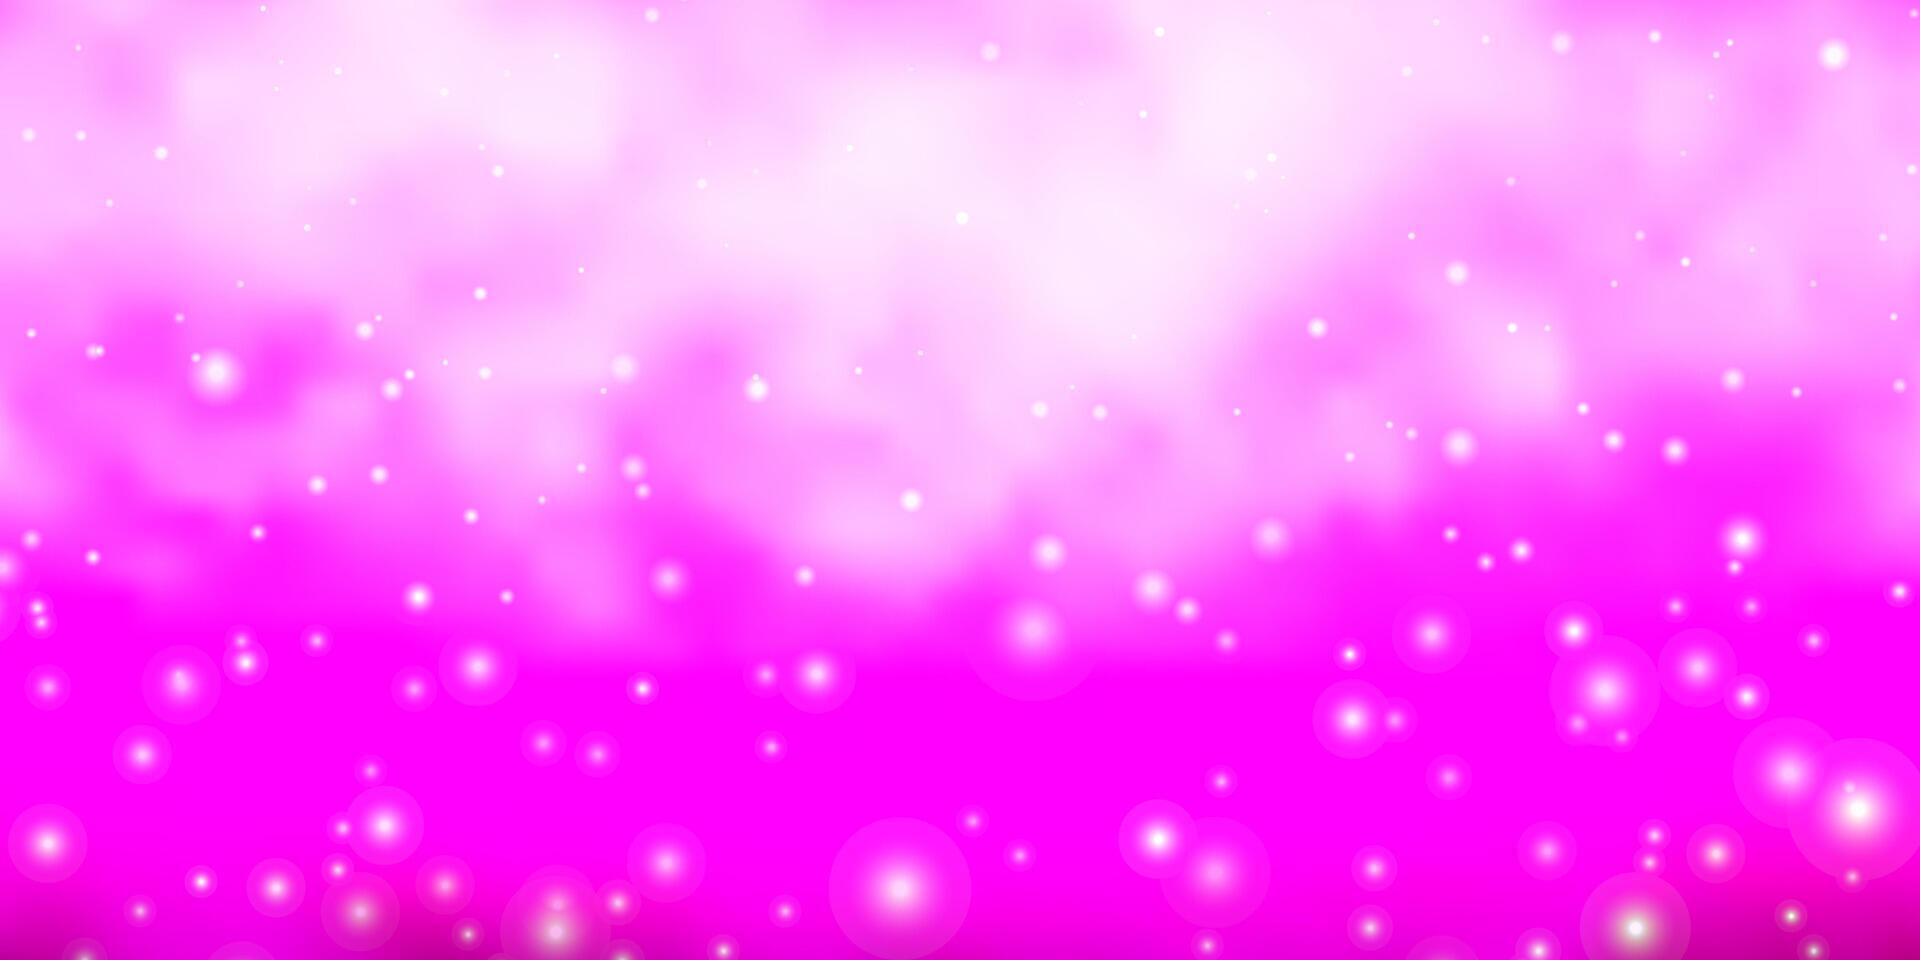 fond de vecteur violet clair et rose avec des étoiles colorées.